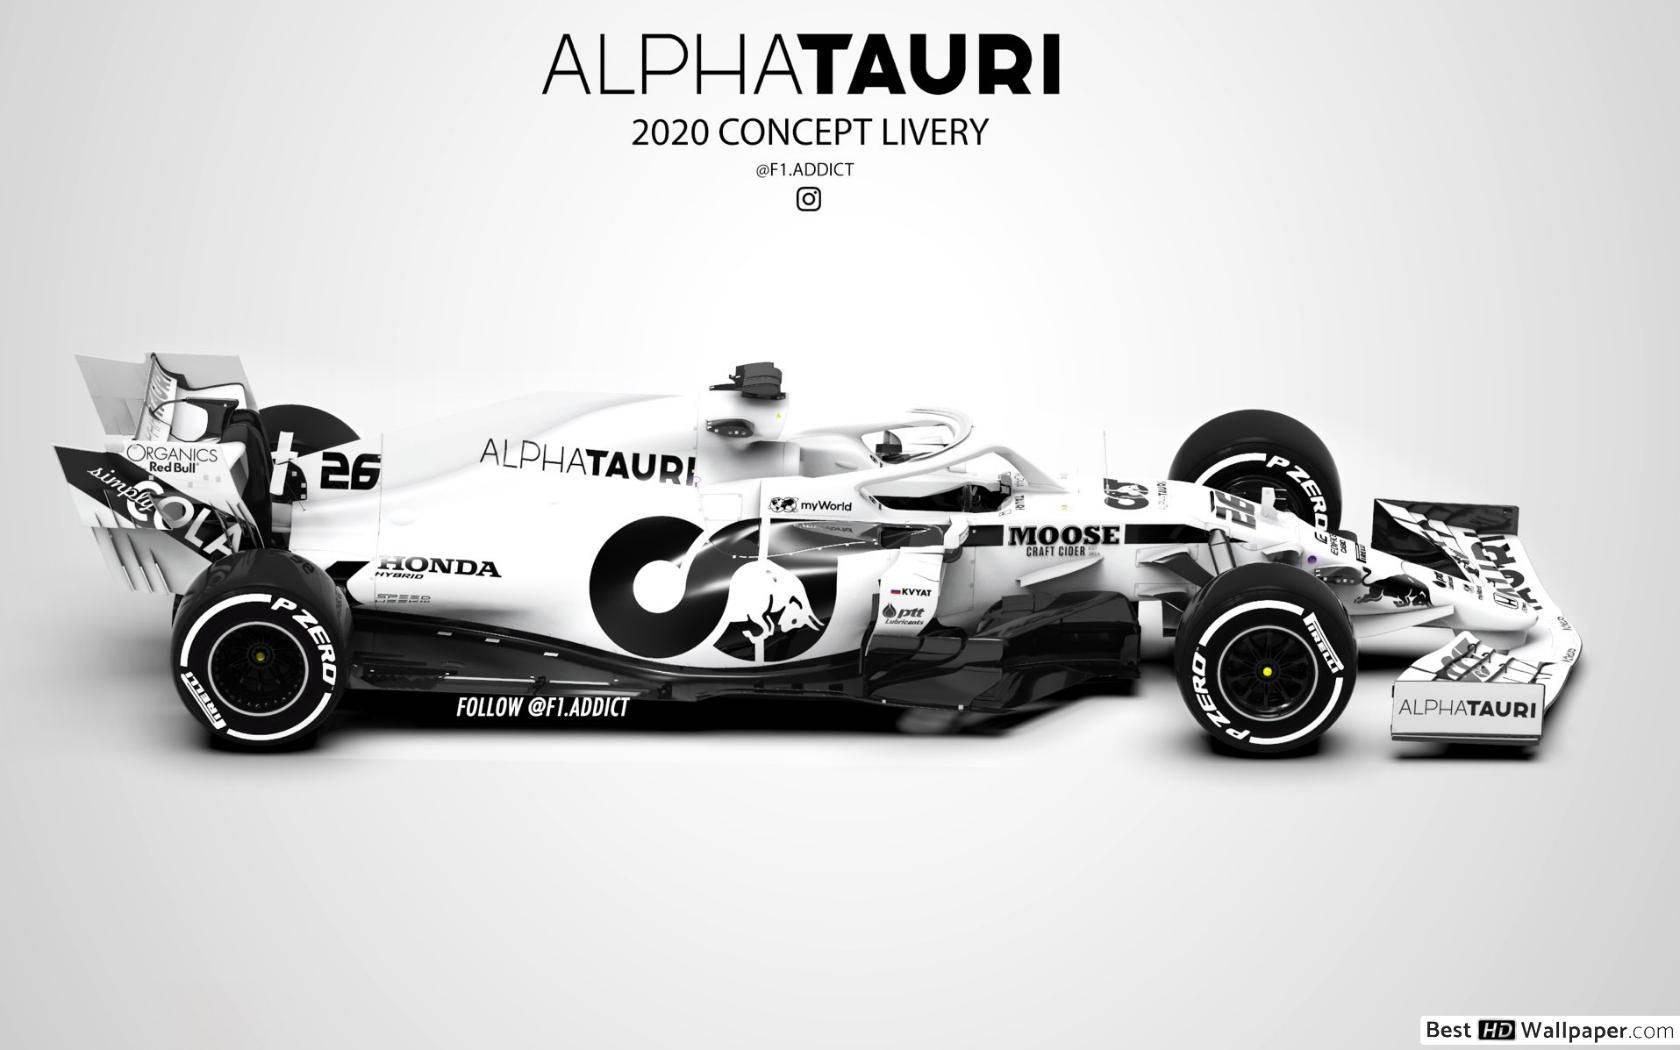 High-speed Alphatauri Racing Car In Action Wallpaper